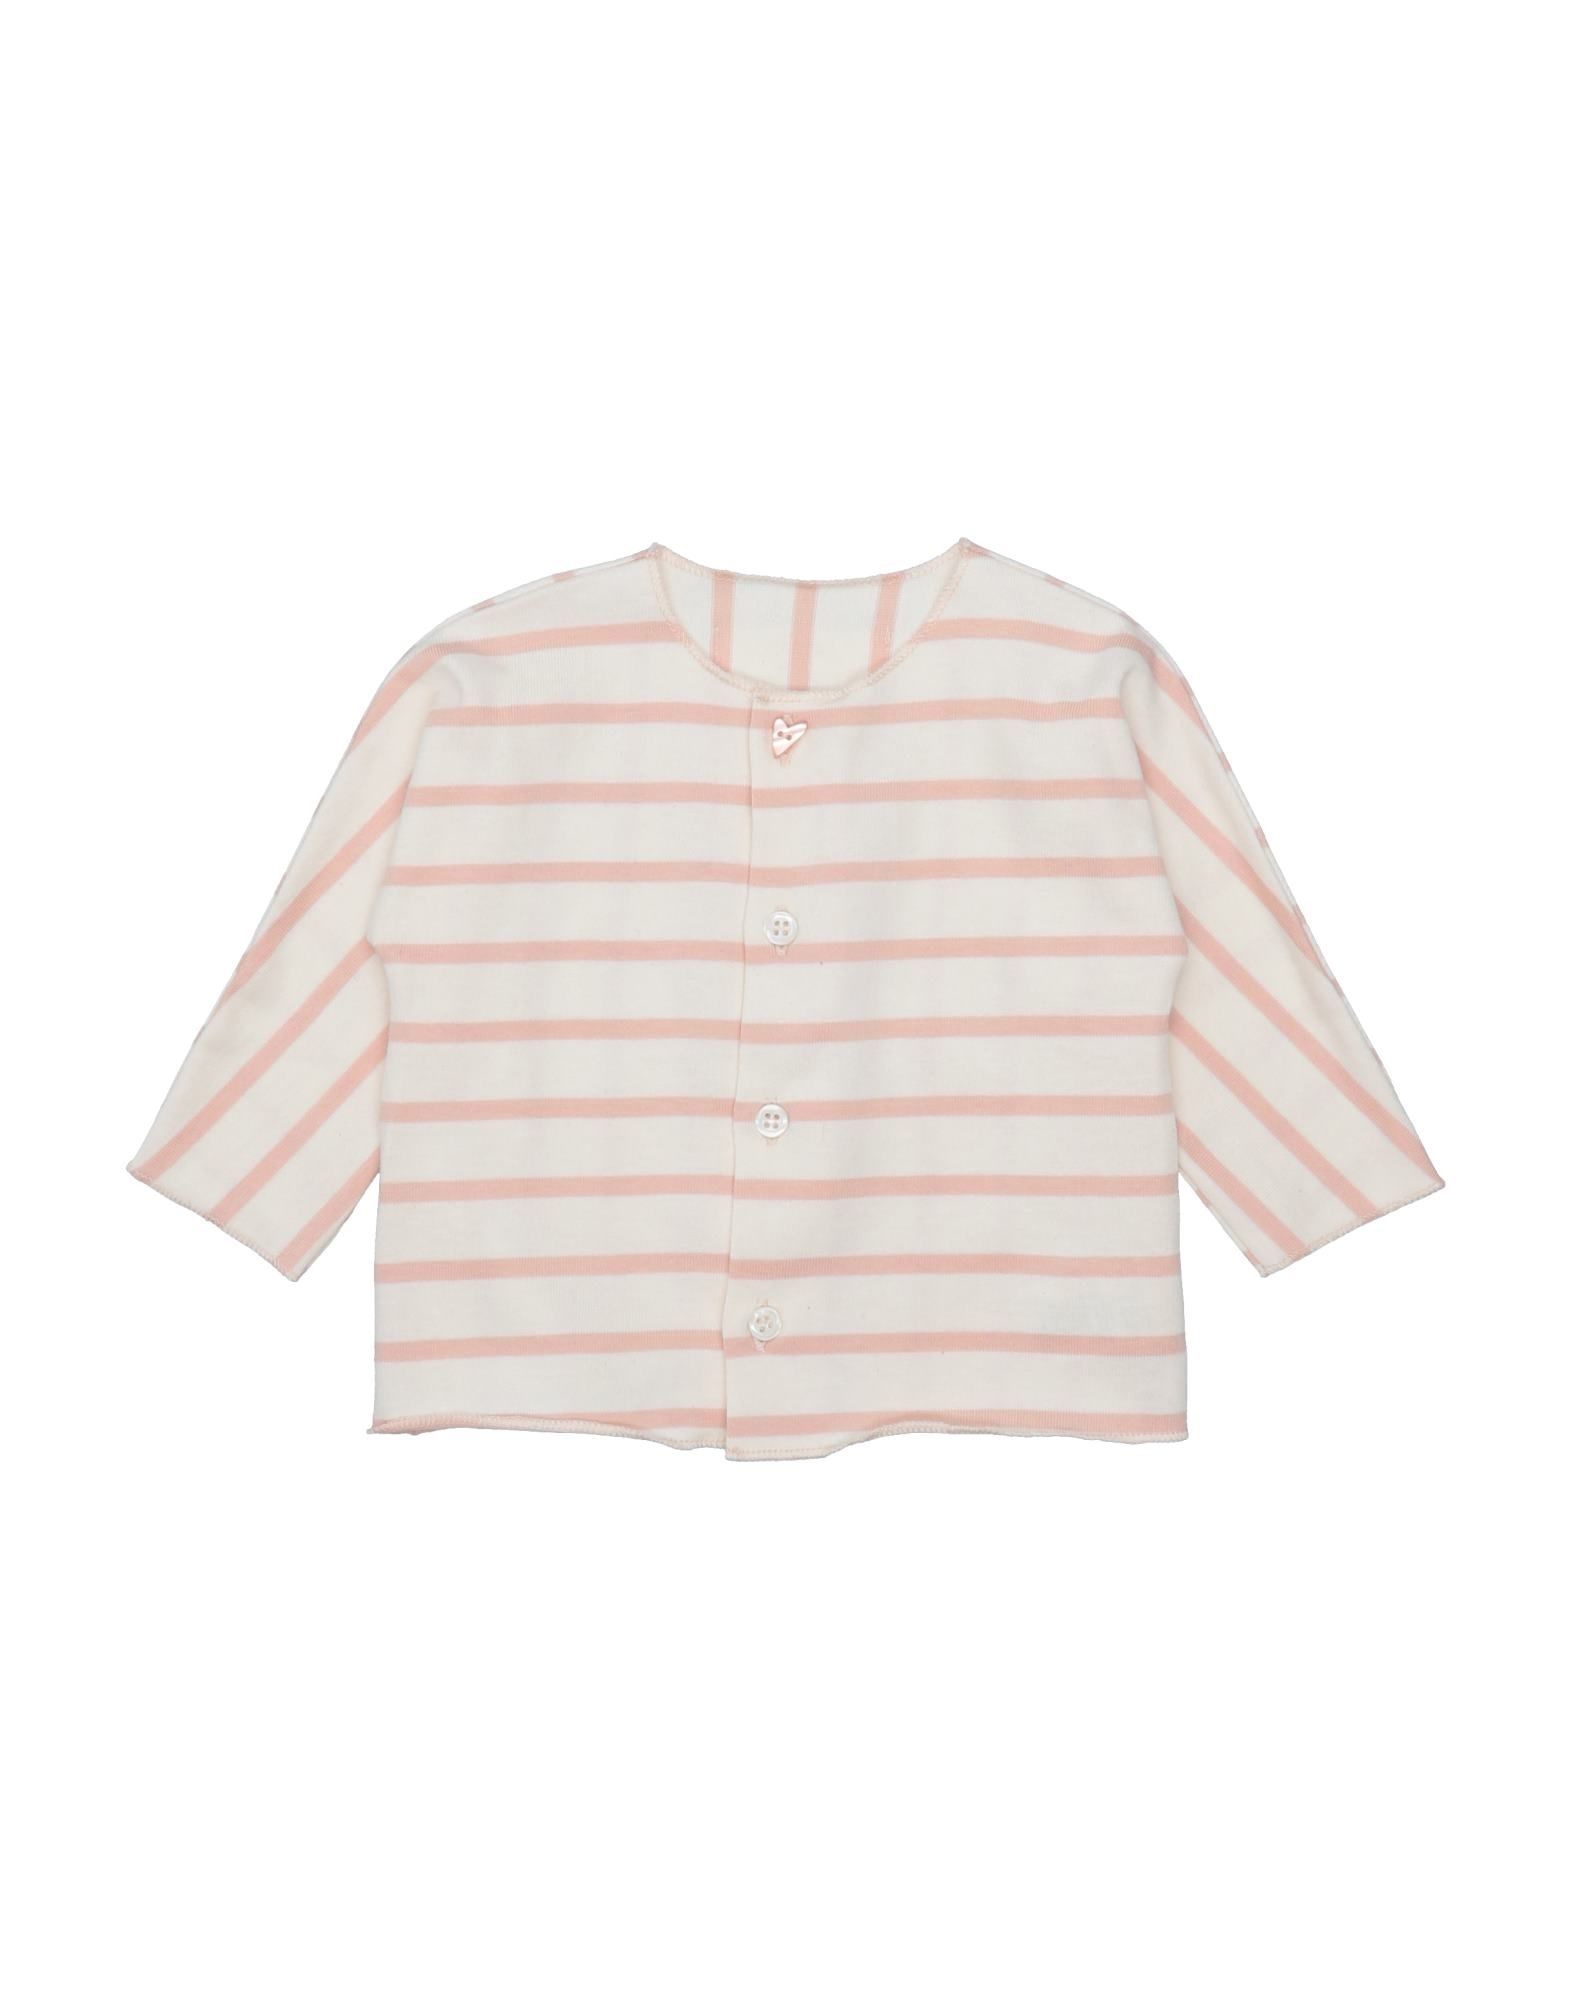 Frugoo Kids' Shirts In Pastel Pink